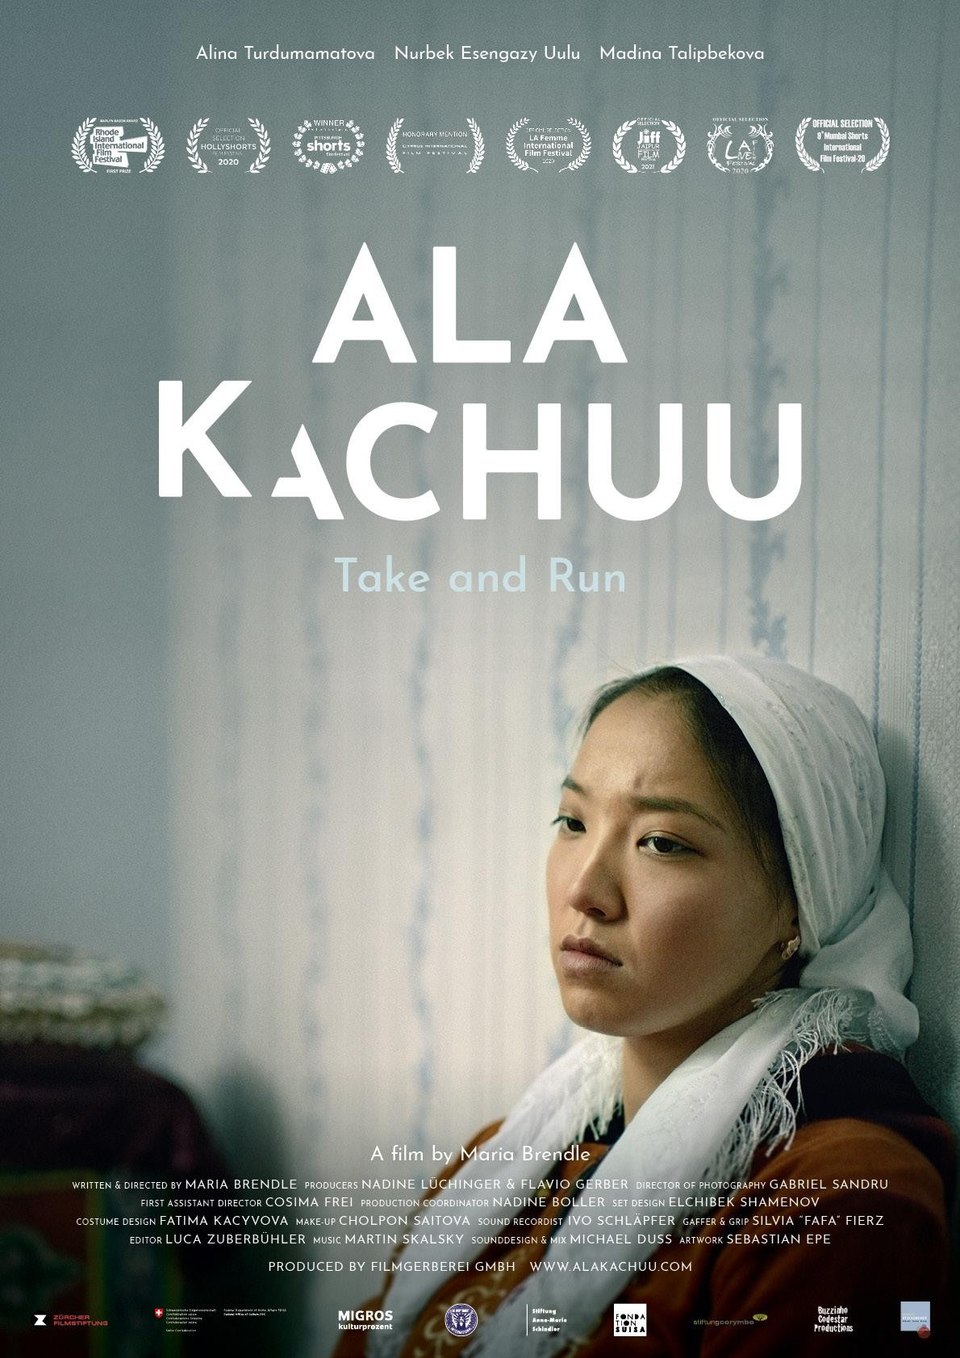 Film Ala kachuu